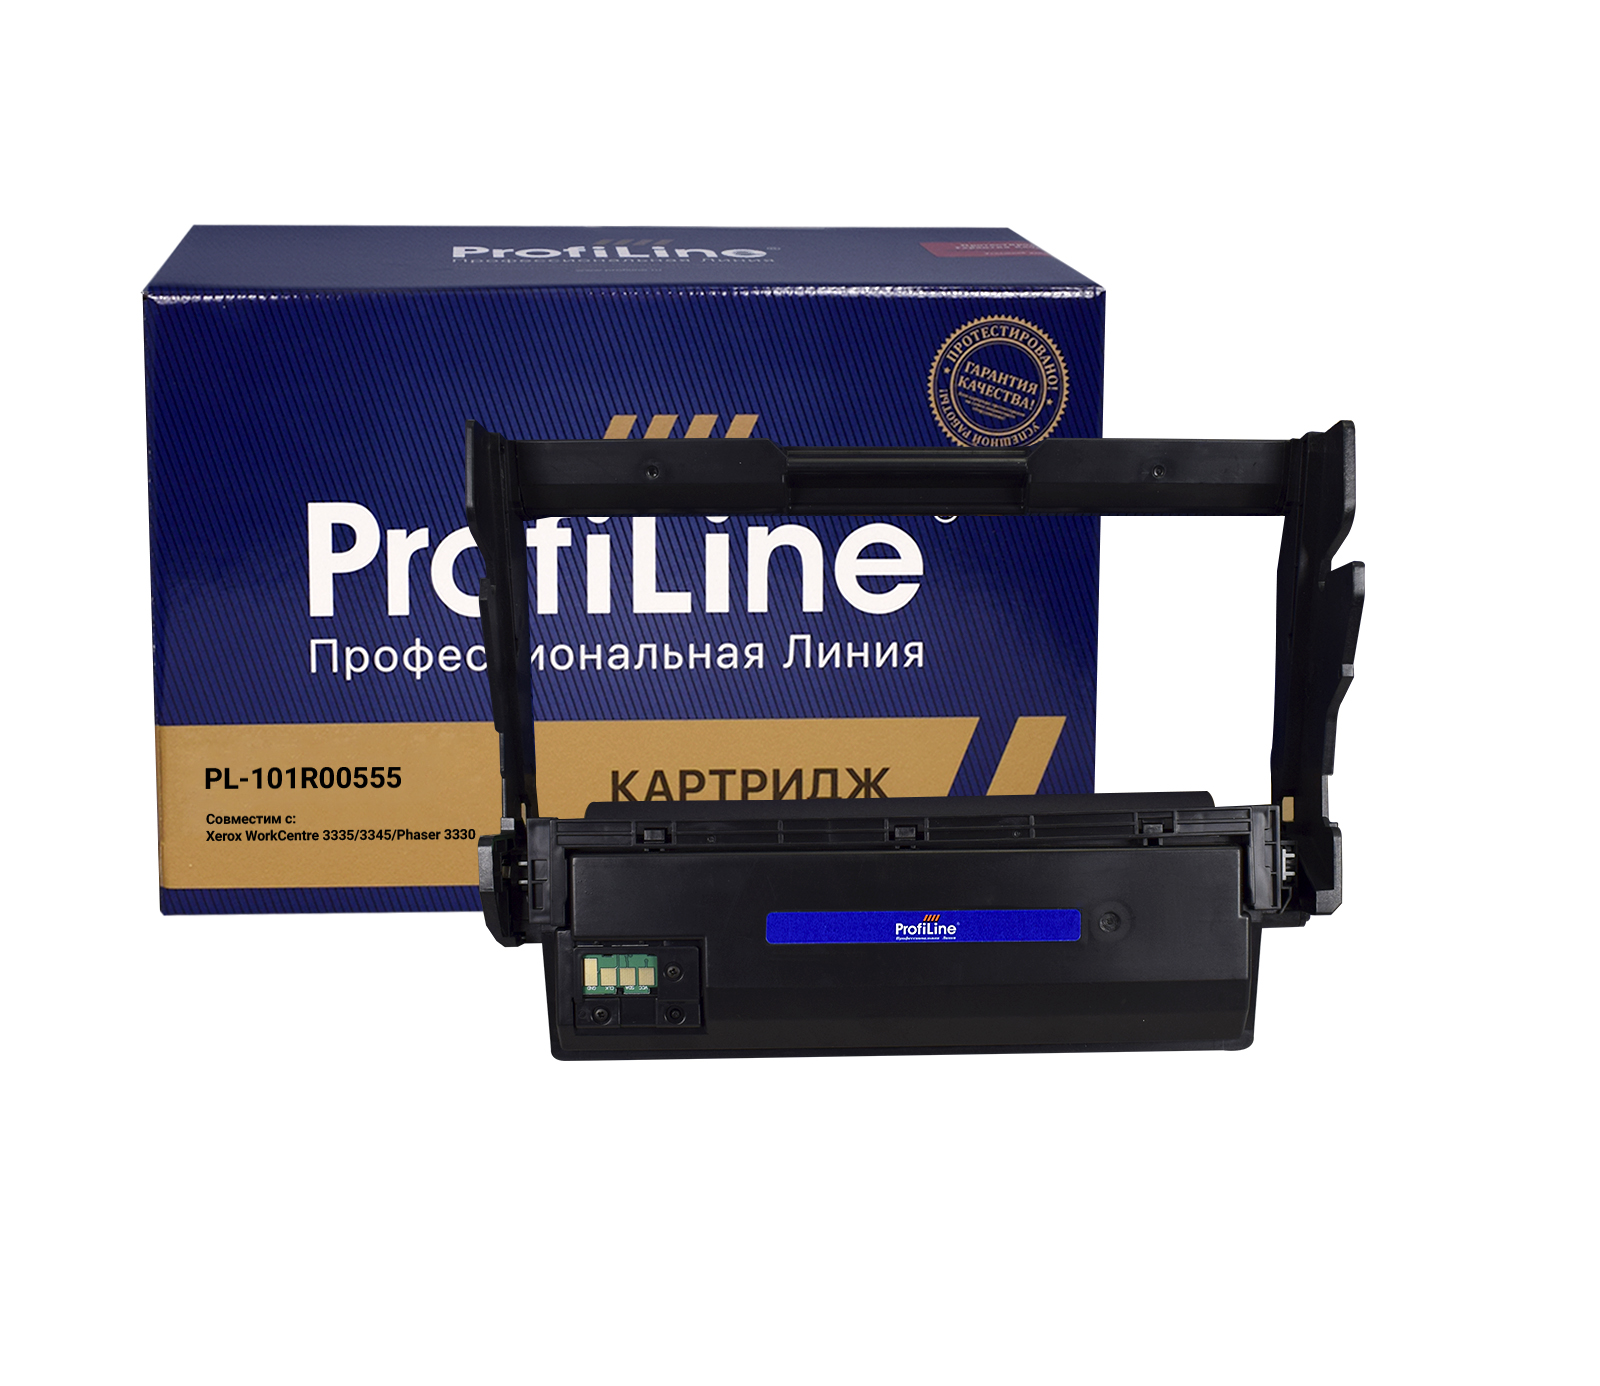 Драм-картридж PL-101R00555 для принтеров Xerox WorkCentre 3335/3345/Phaser 3330 Drum 30000 копий ProfiLine